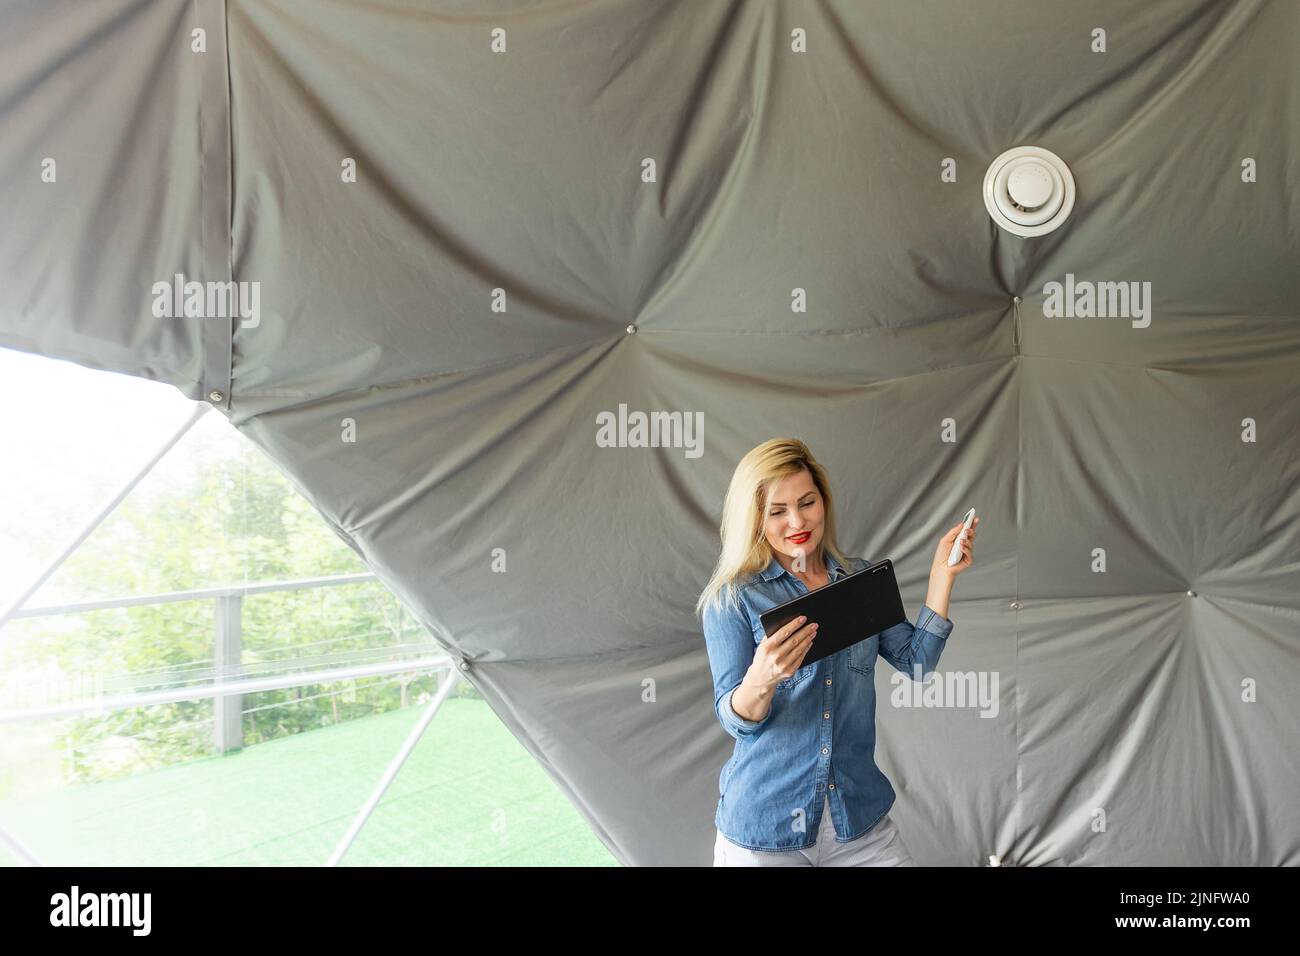 femme avec une tablette qui active le système de ventilation comme récupérateur pour la qualité de l'air frais à l'intérieur, maison intelligente Banque D'Images